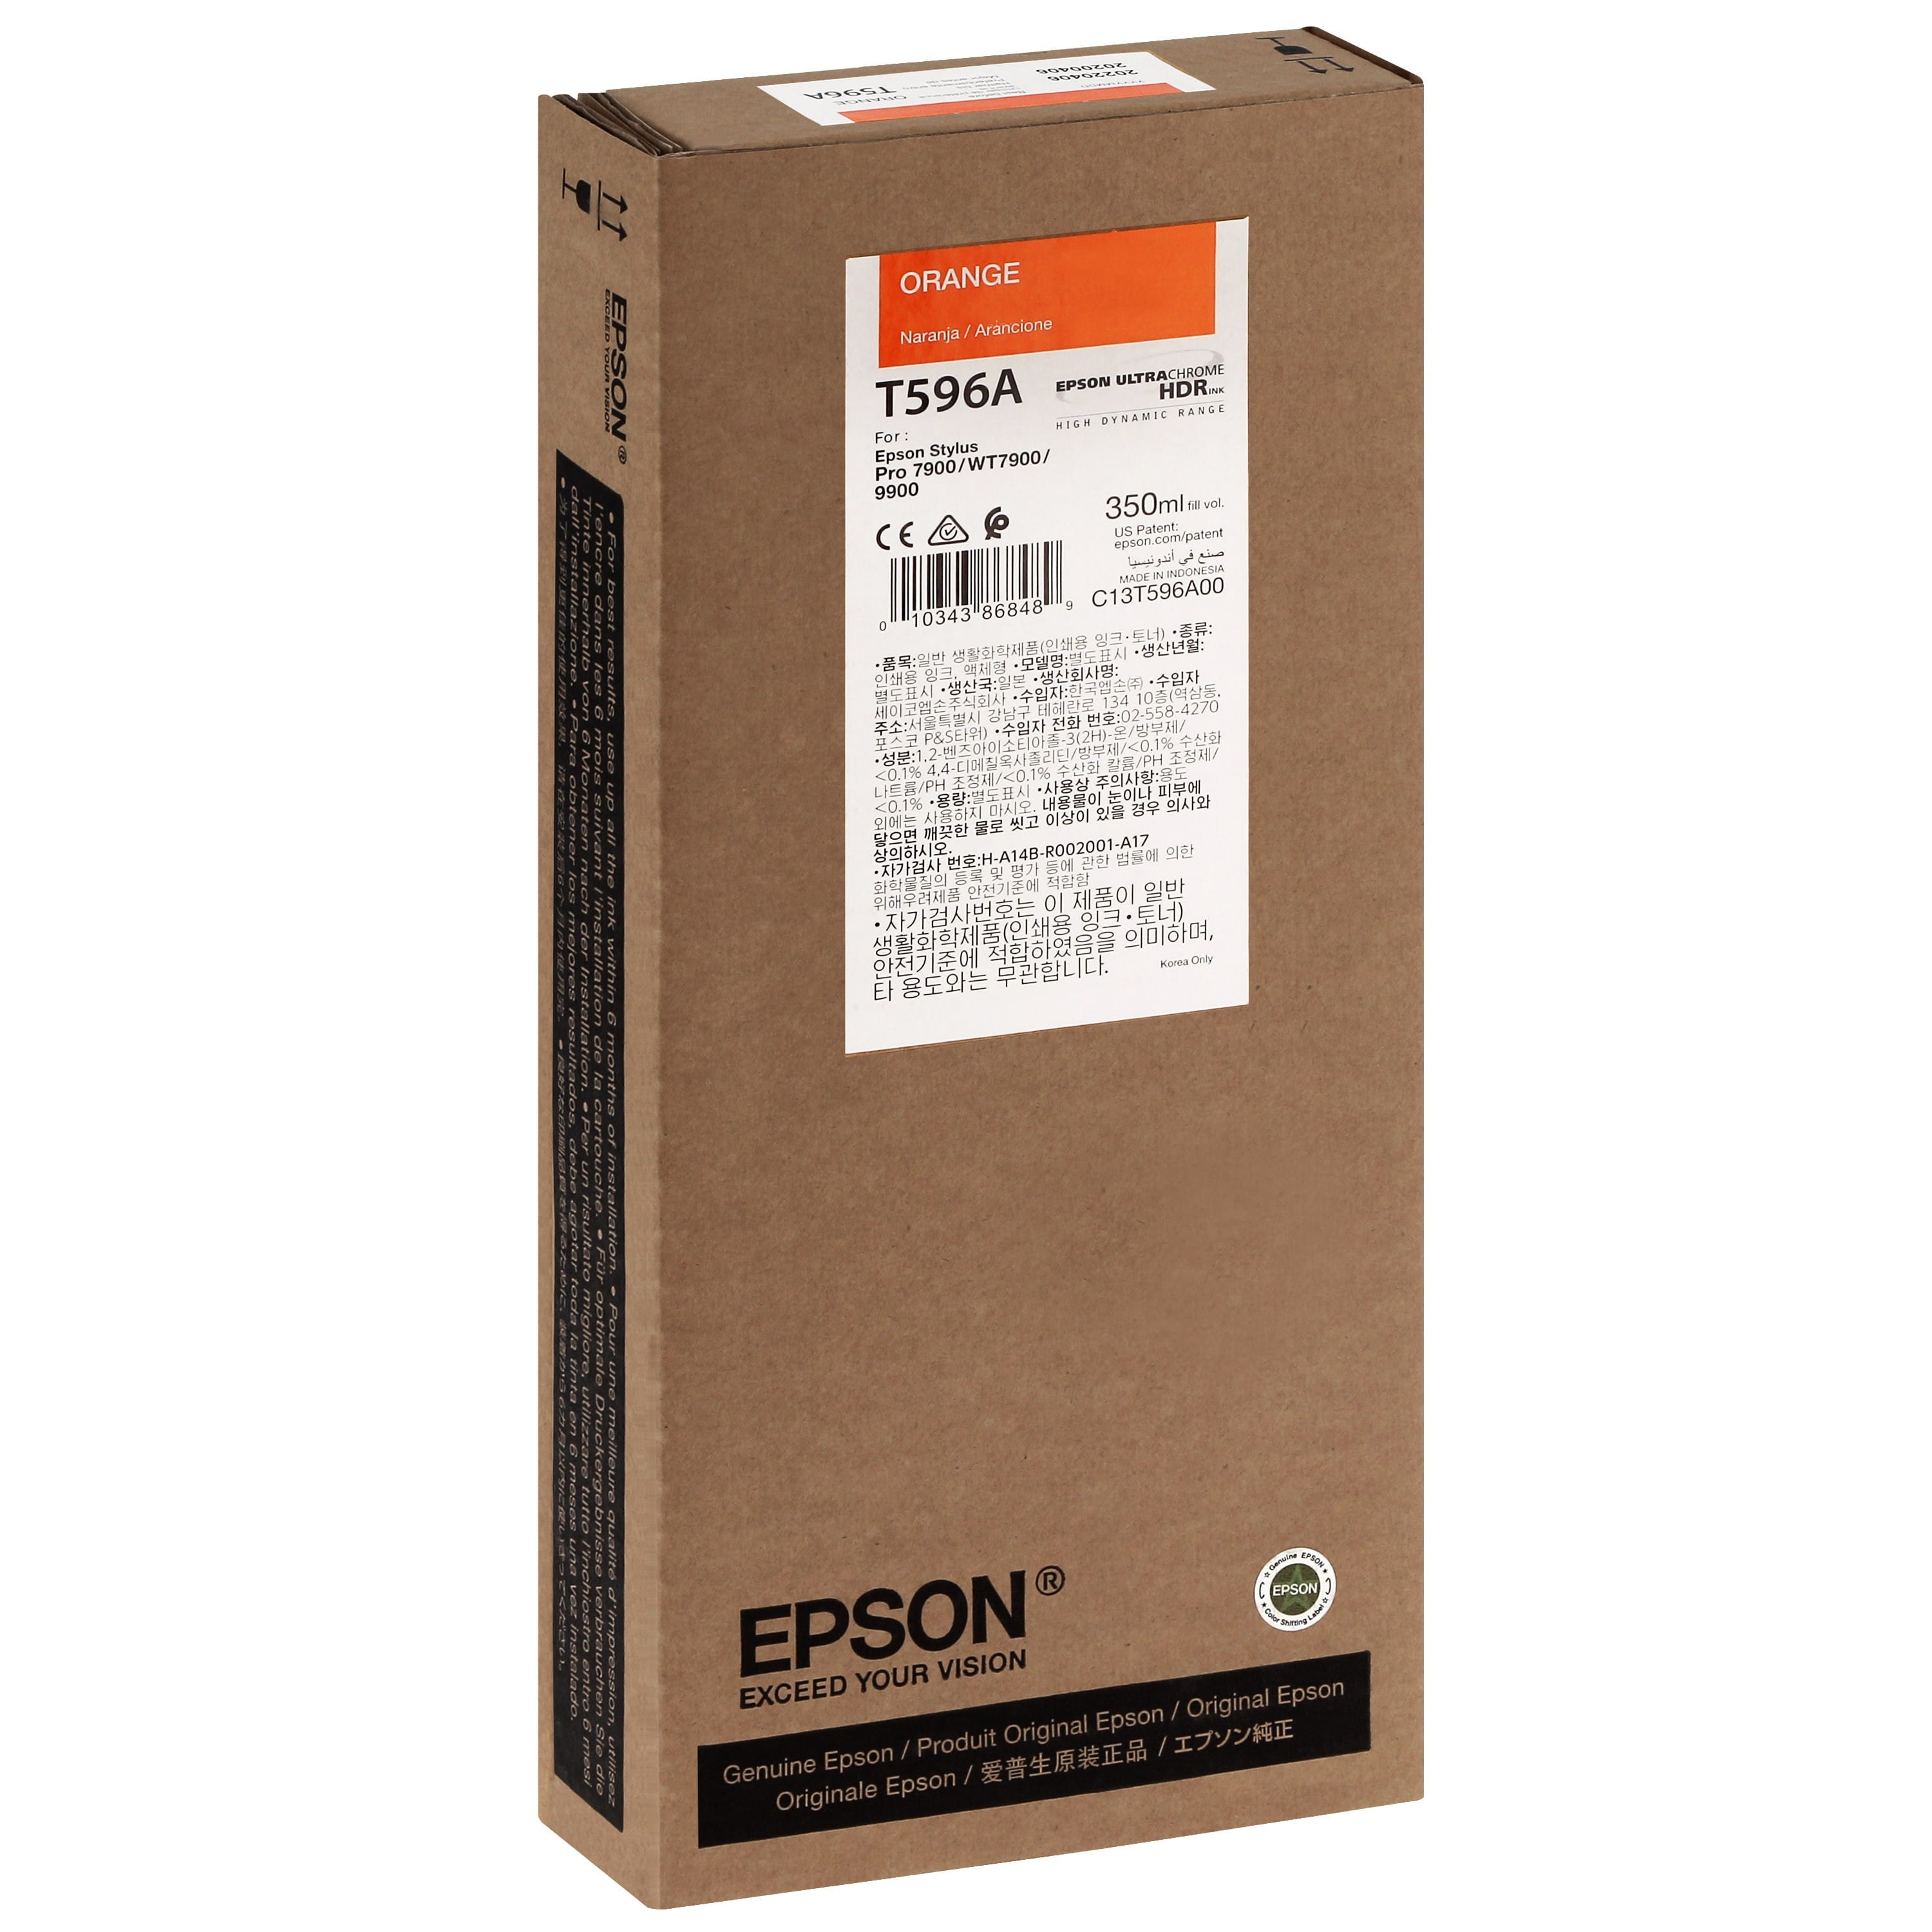 EPSON - Cartouche d'encre traceur T596A Pour imprimante 7900/9900 Orange - 350ml